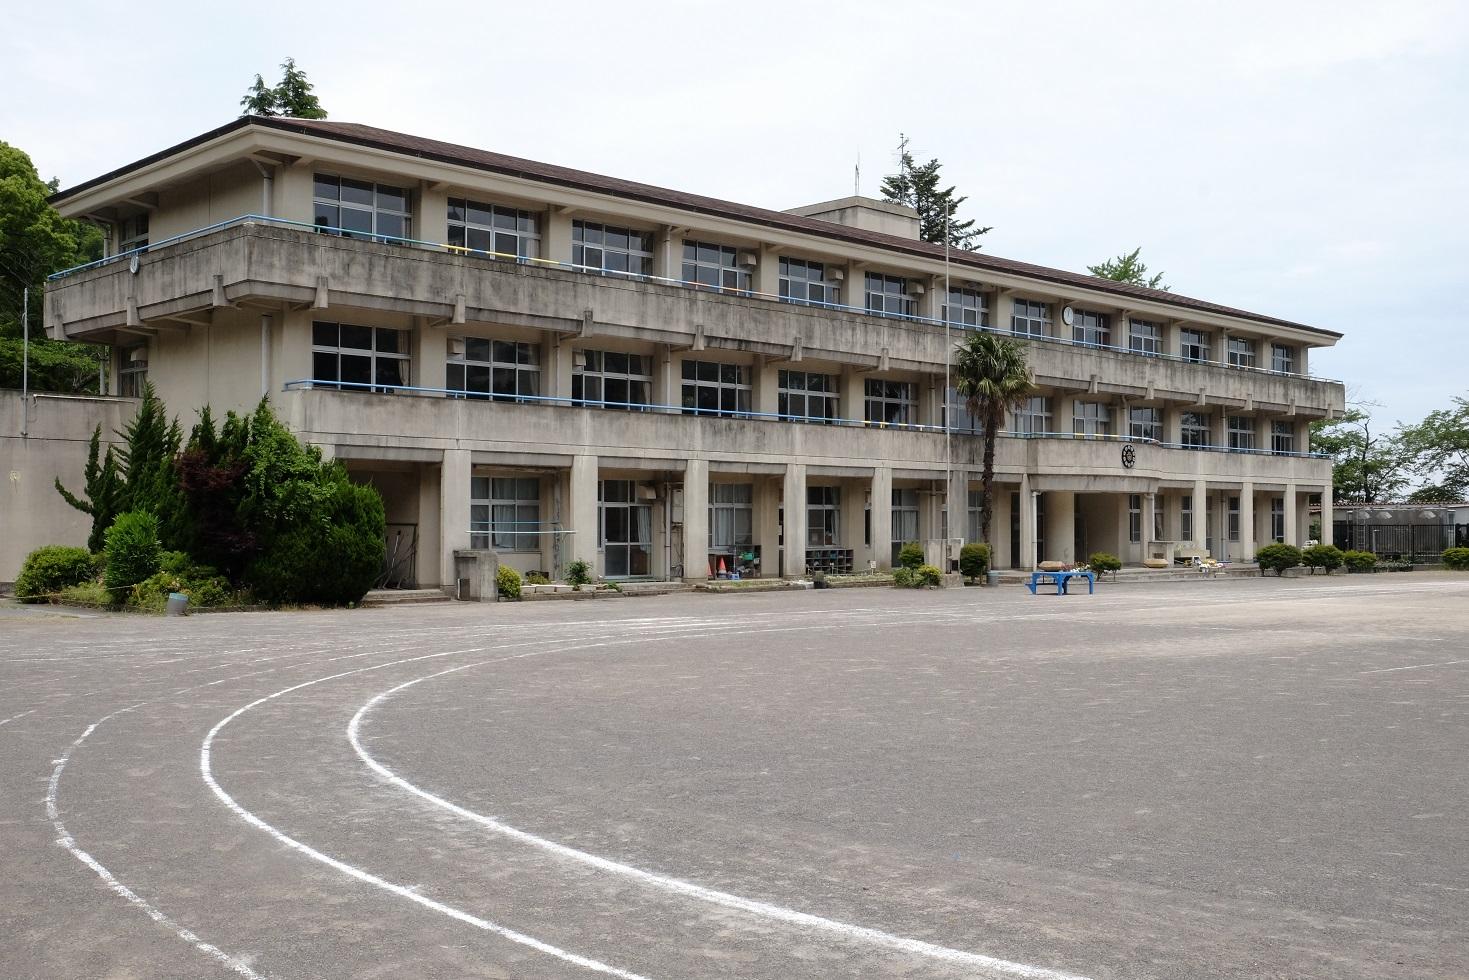 川奈小学校の校舎と校庭の写真